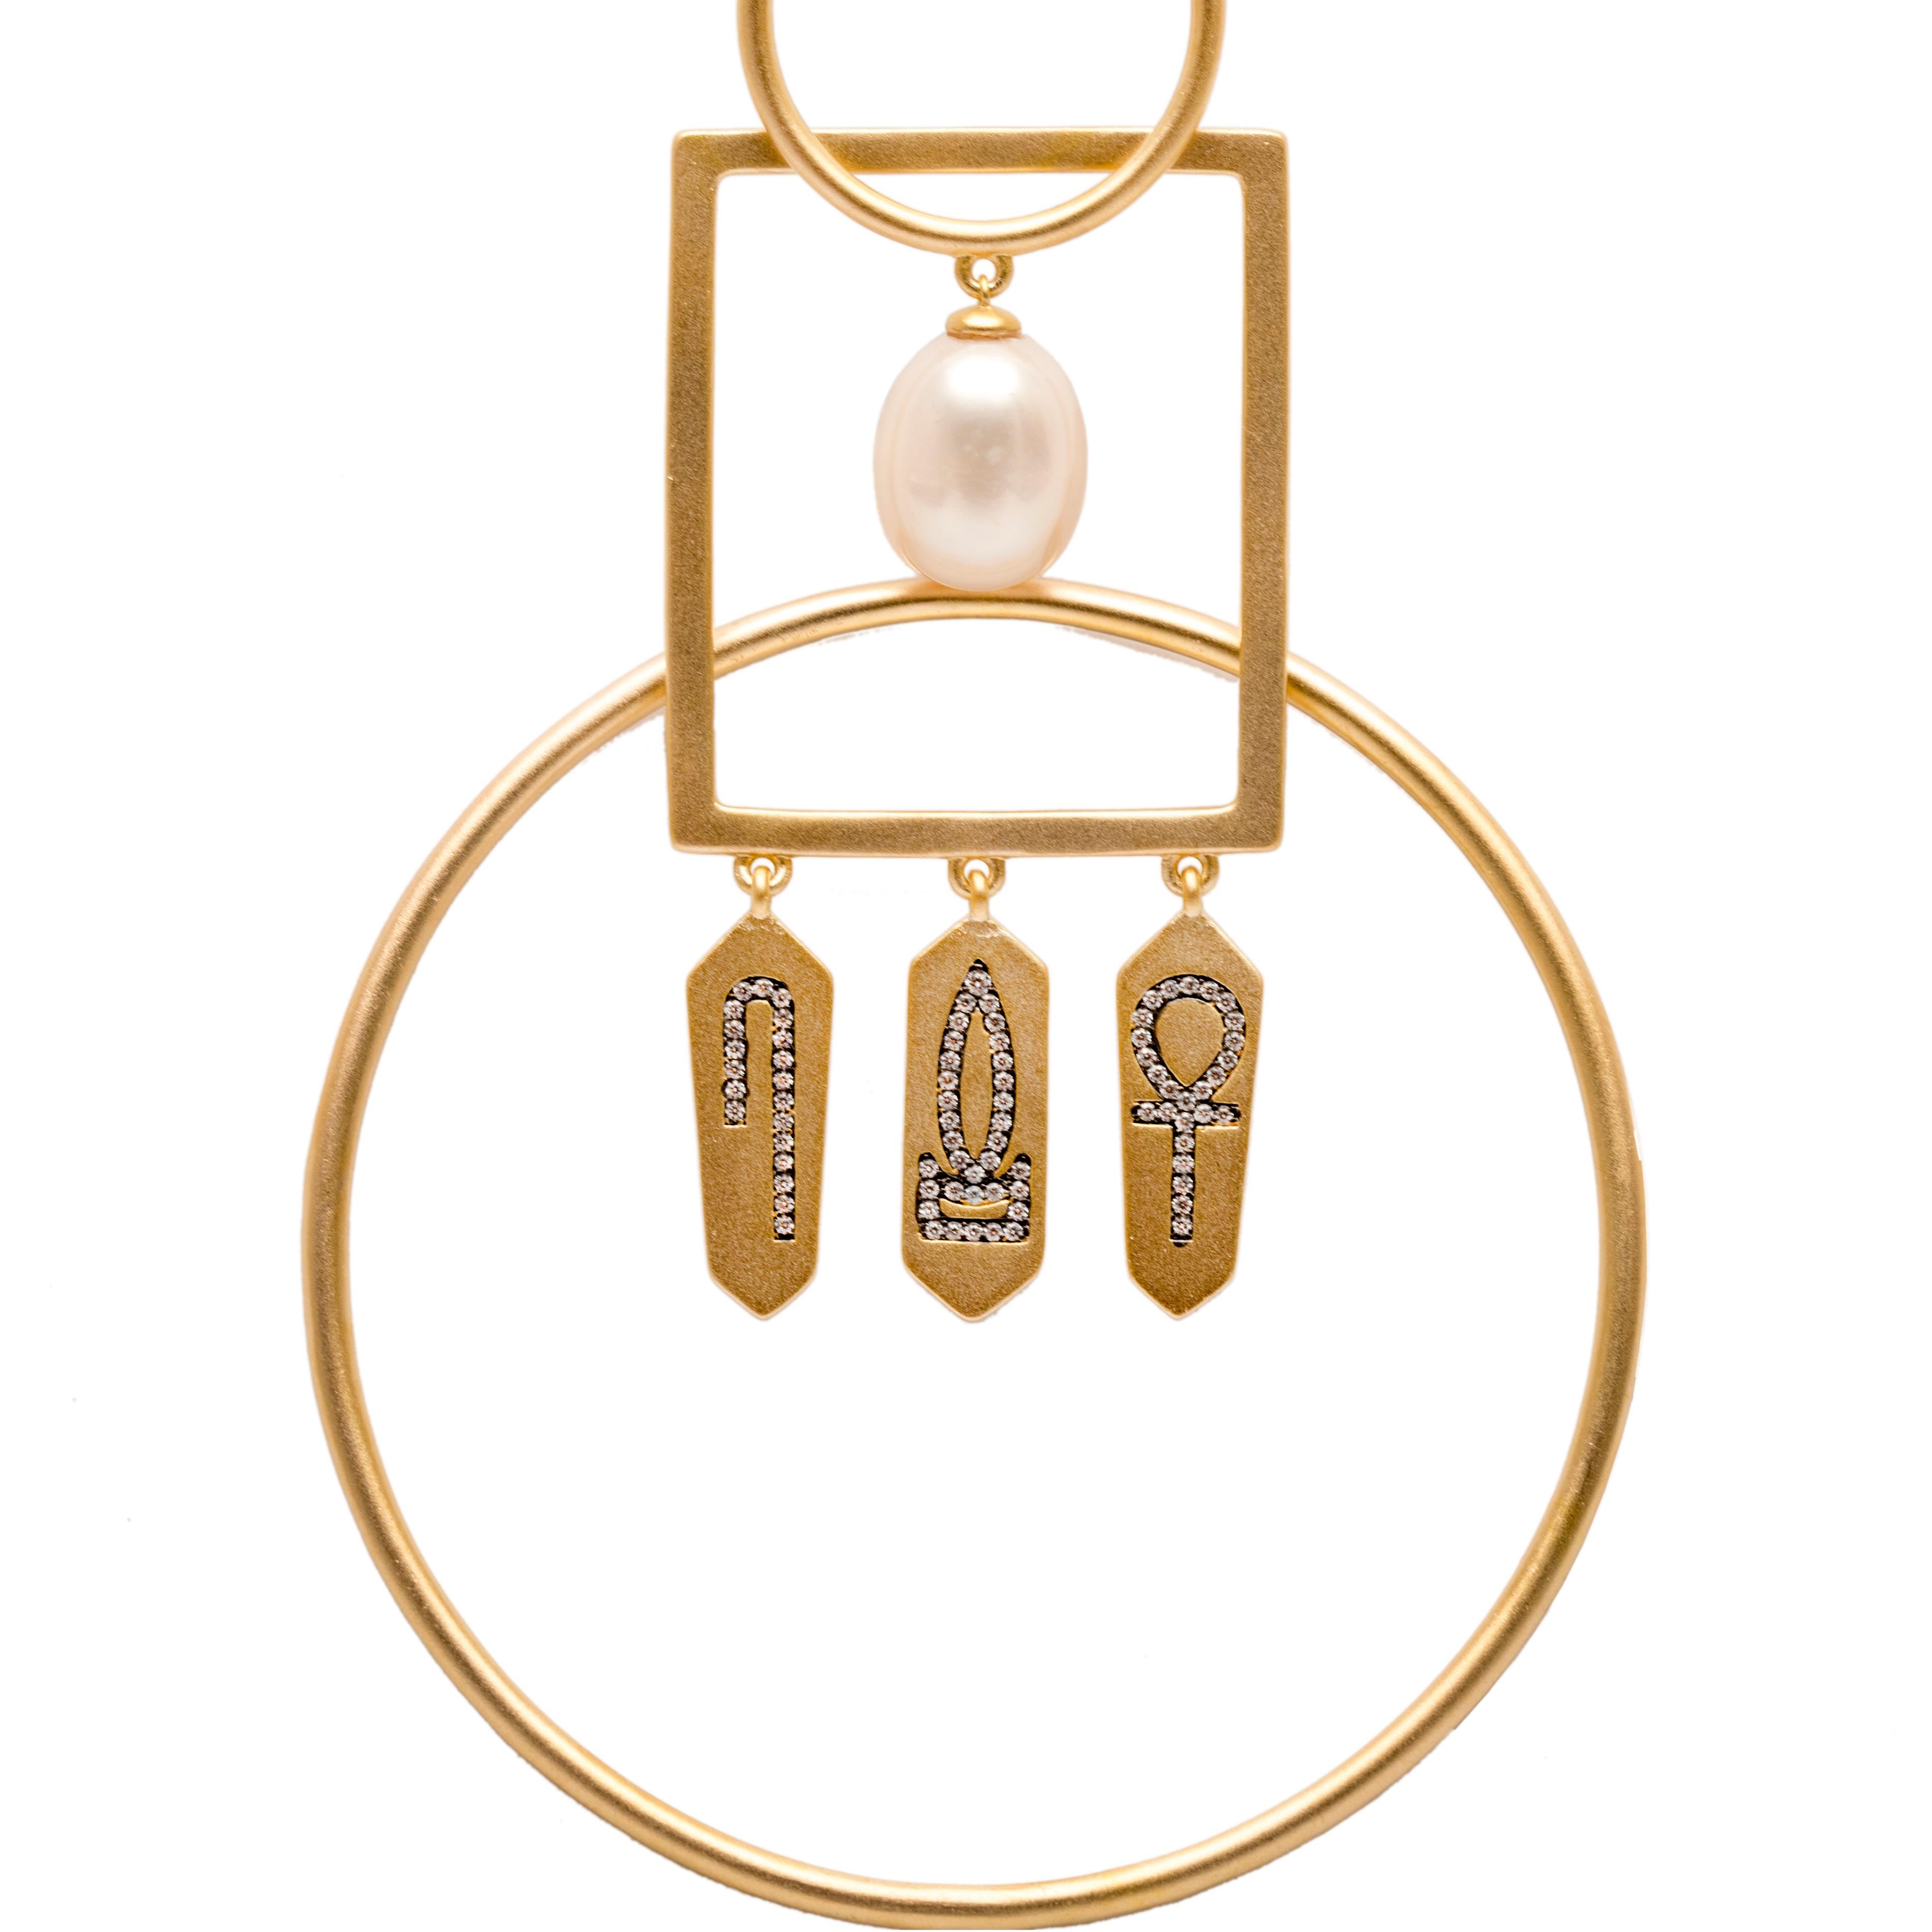 Jüngste Ergänzung der Malikat = Queens Collections von Ammanii. Handgefertigte, miteinander verbundene Ohrringe mit Amuletten, die mit Hieroglyphenzeichen beschriftet sind, um Ihnen die Kraft des Lebens, der Gesundheit und des Wohlstands zu